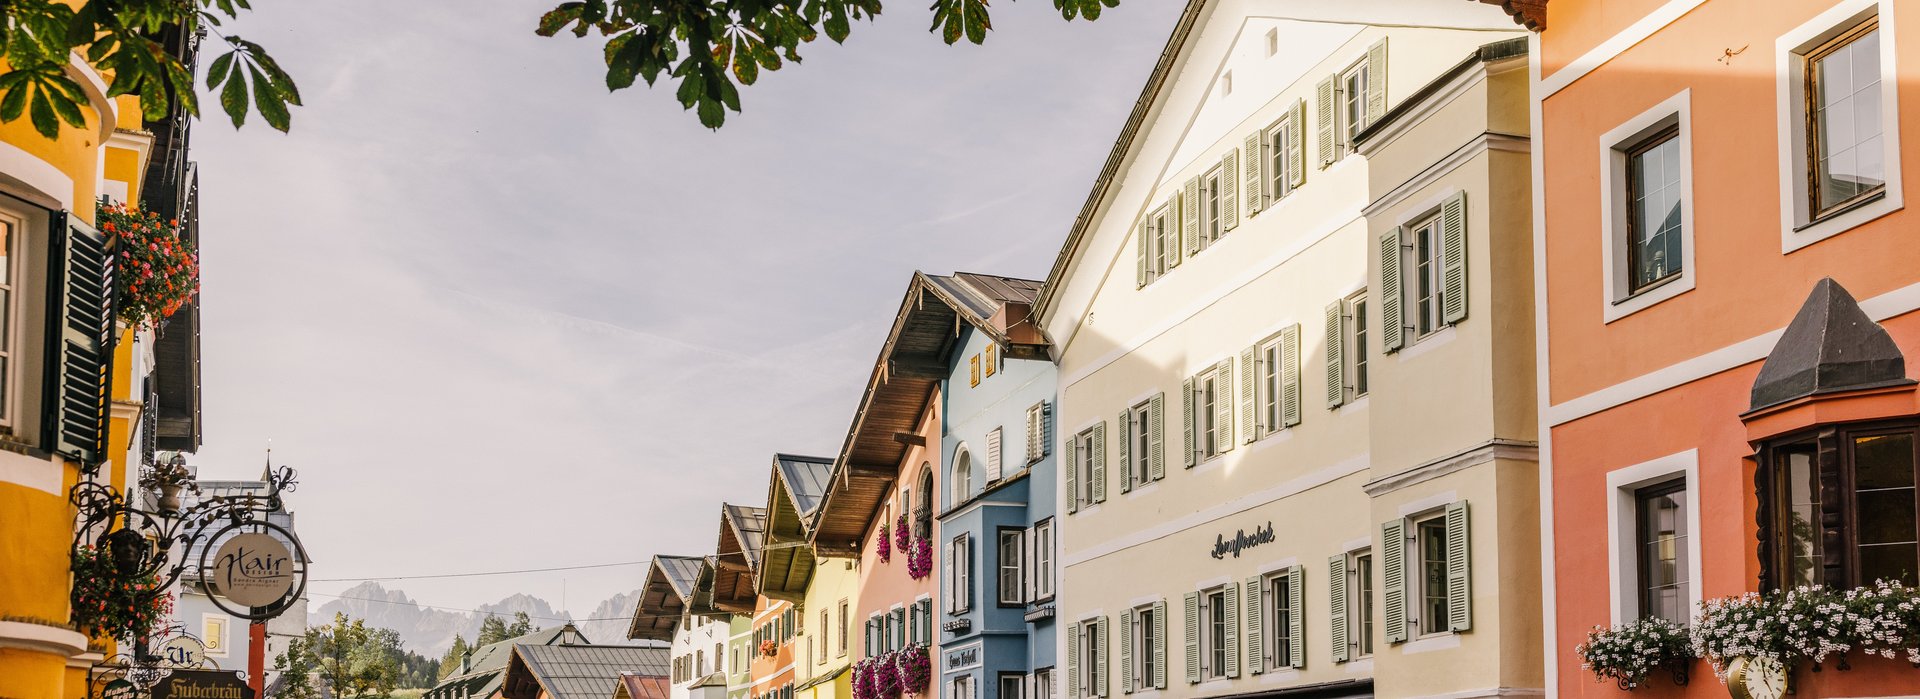 Häuserfassade Kitzbühel